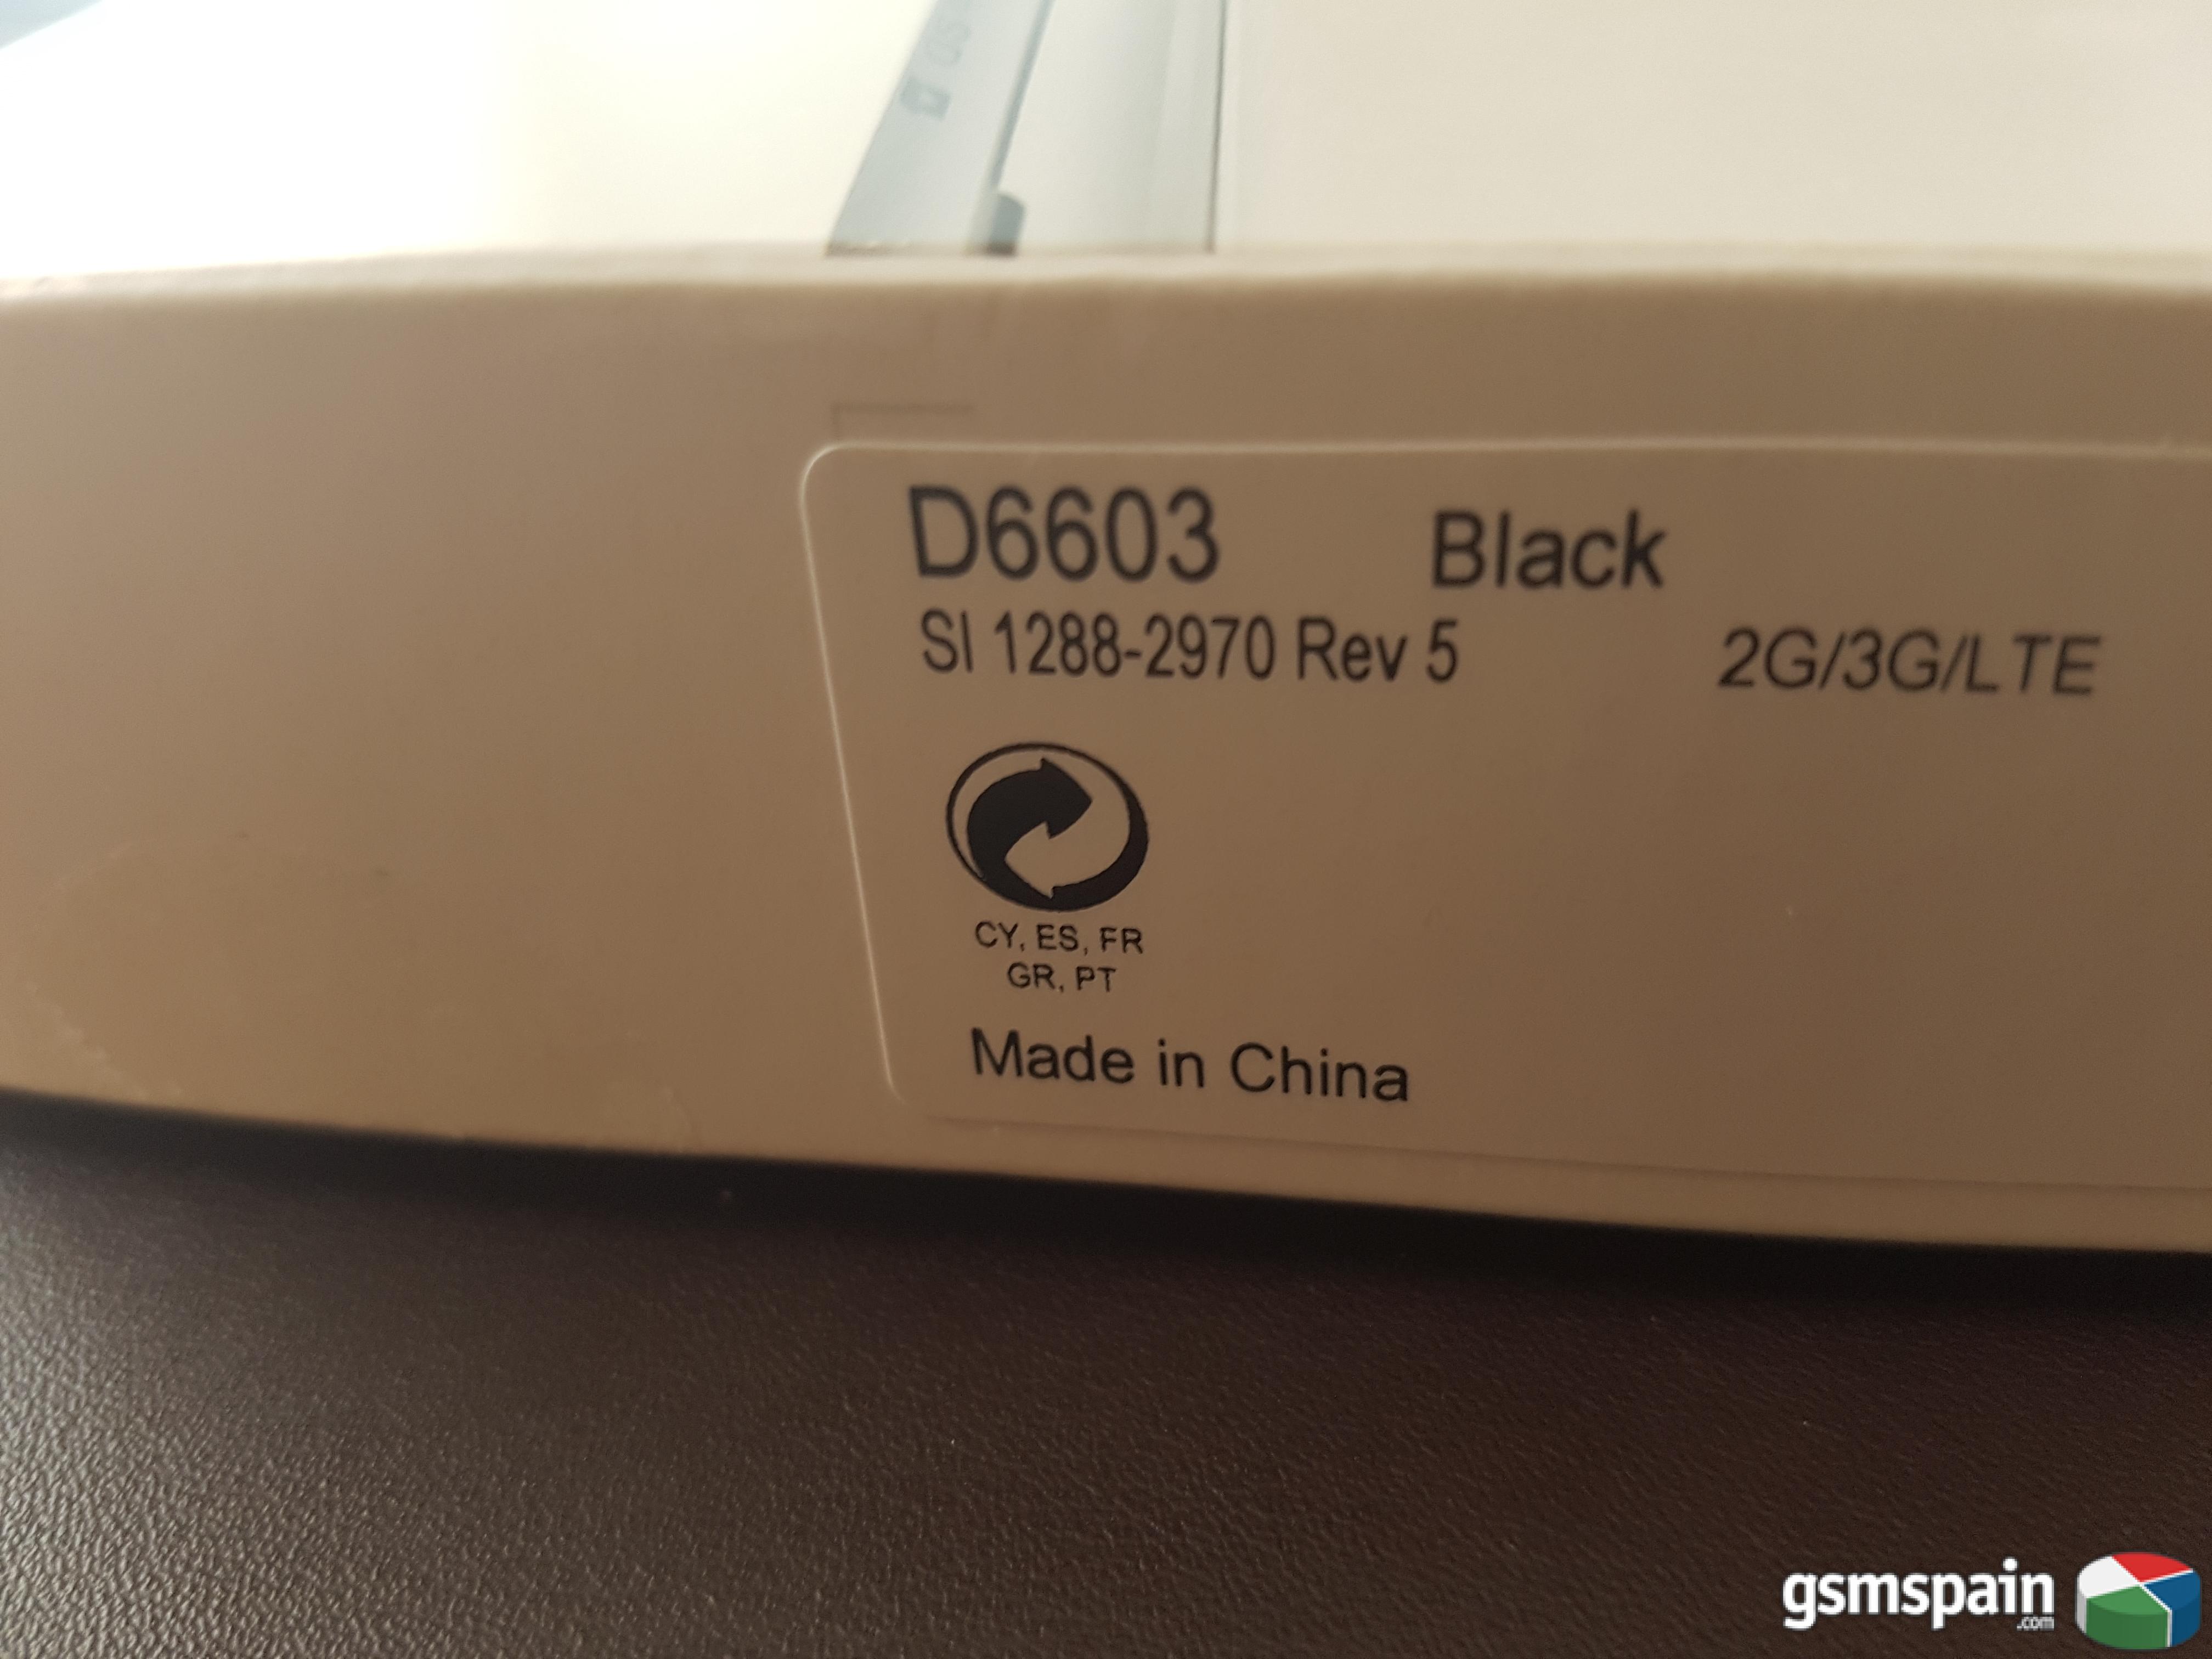 [VENDO] Sony Xperia Z3 Negro Libre 354 Euros con Factura y Garanta